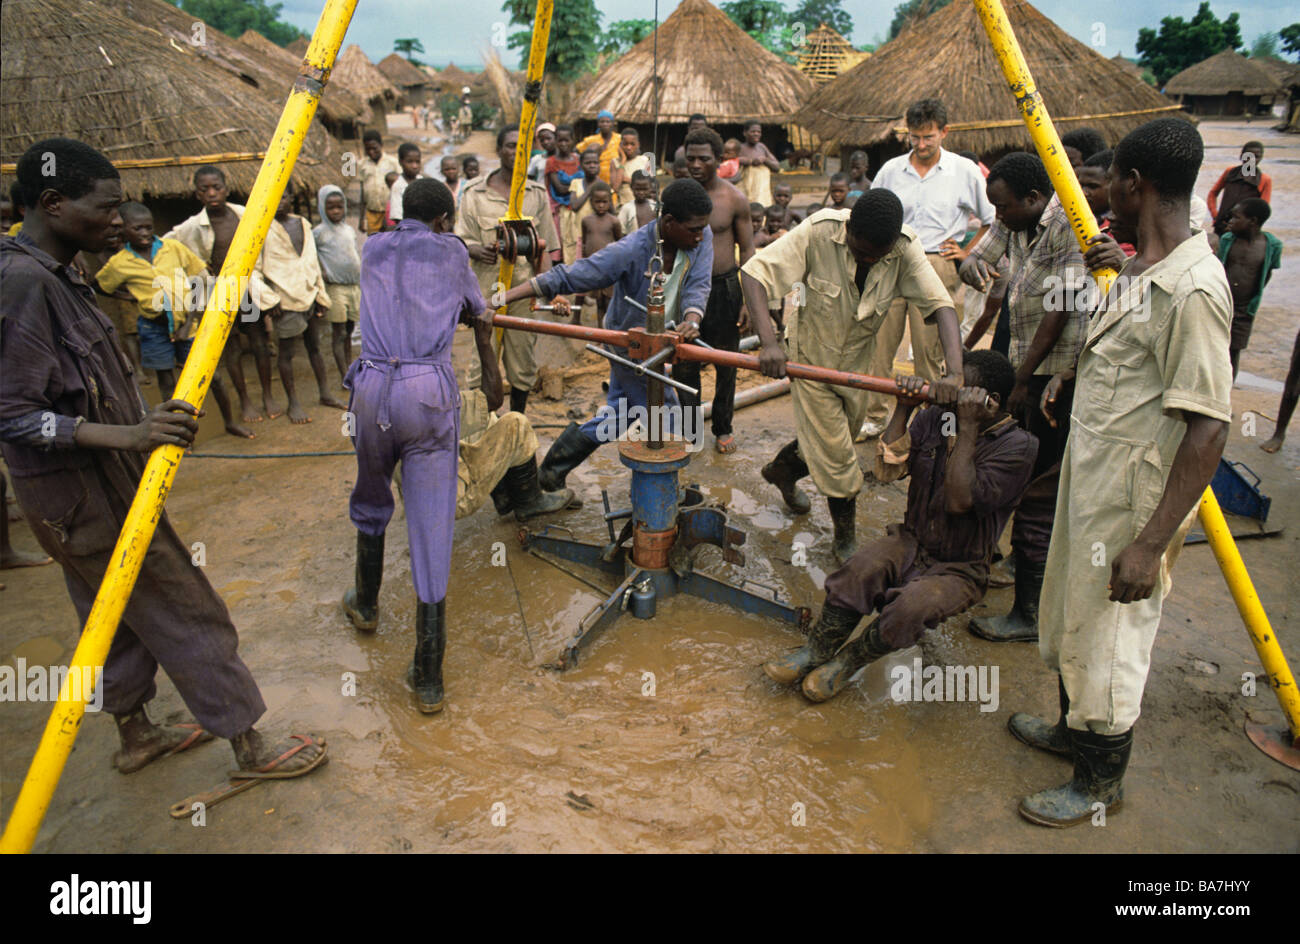 Les enfants travailleurs foule autour d'un puits de forage dans le village du Malawi après les inondations Banque D'Images